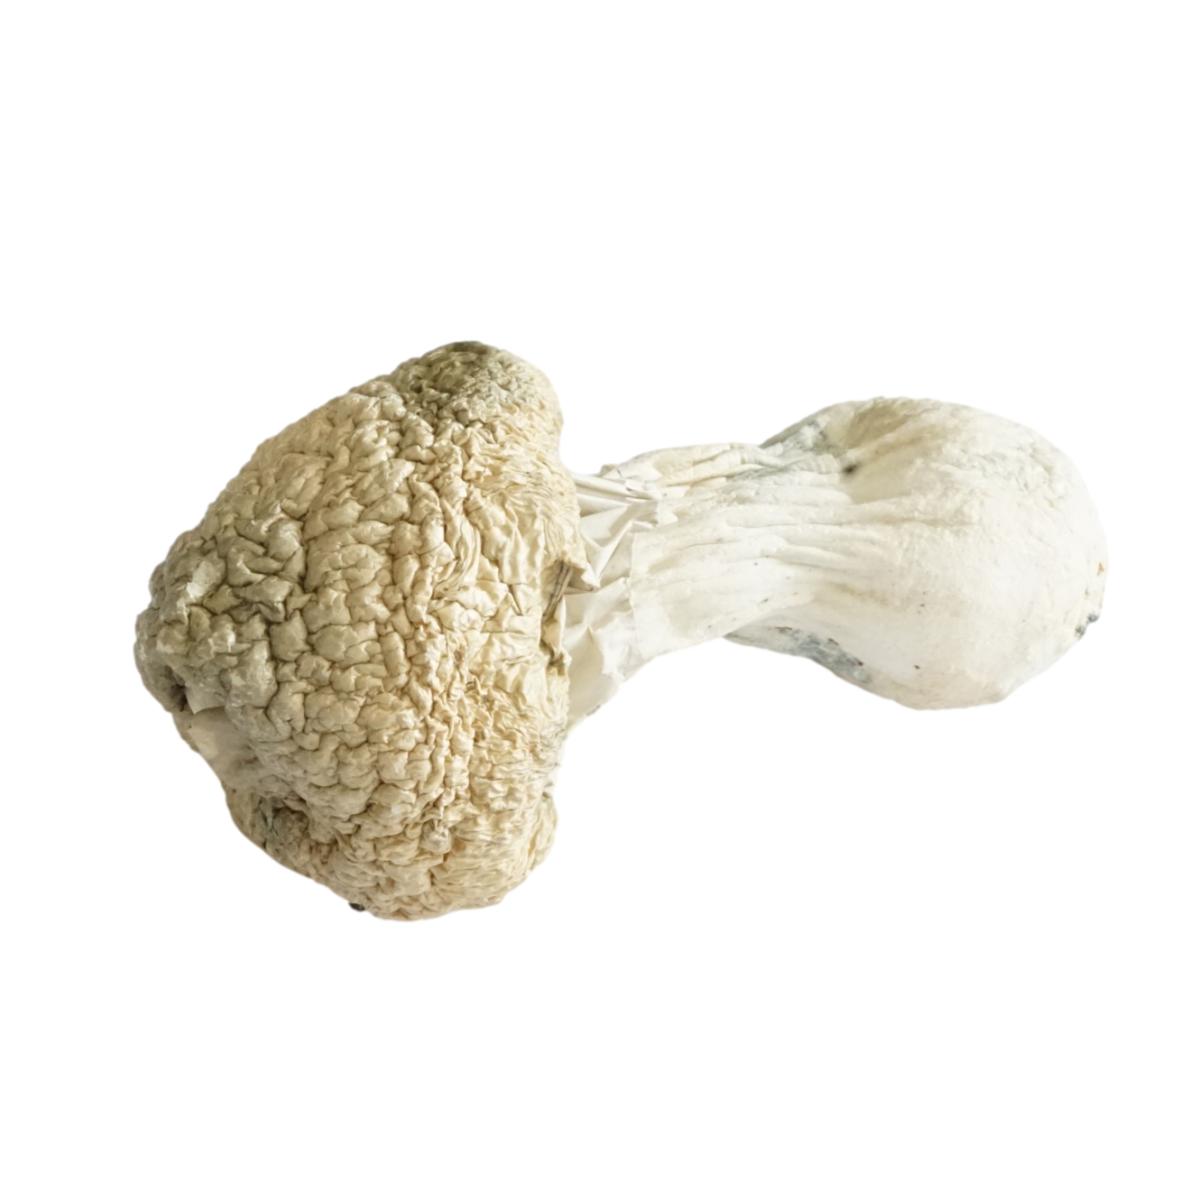 White Rabbit Mushroom